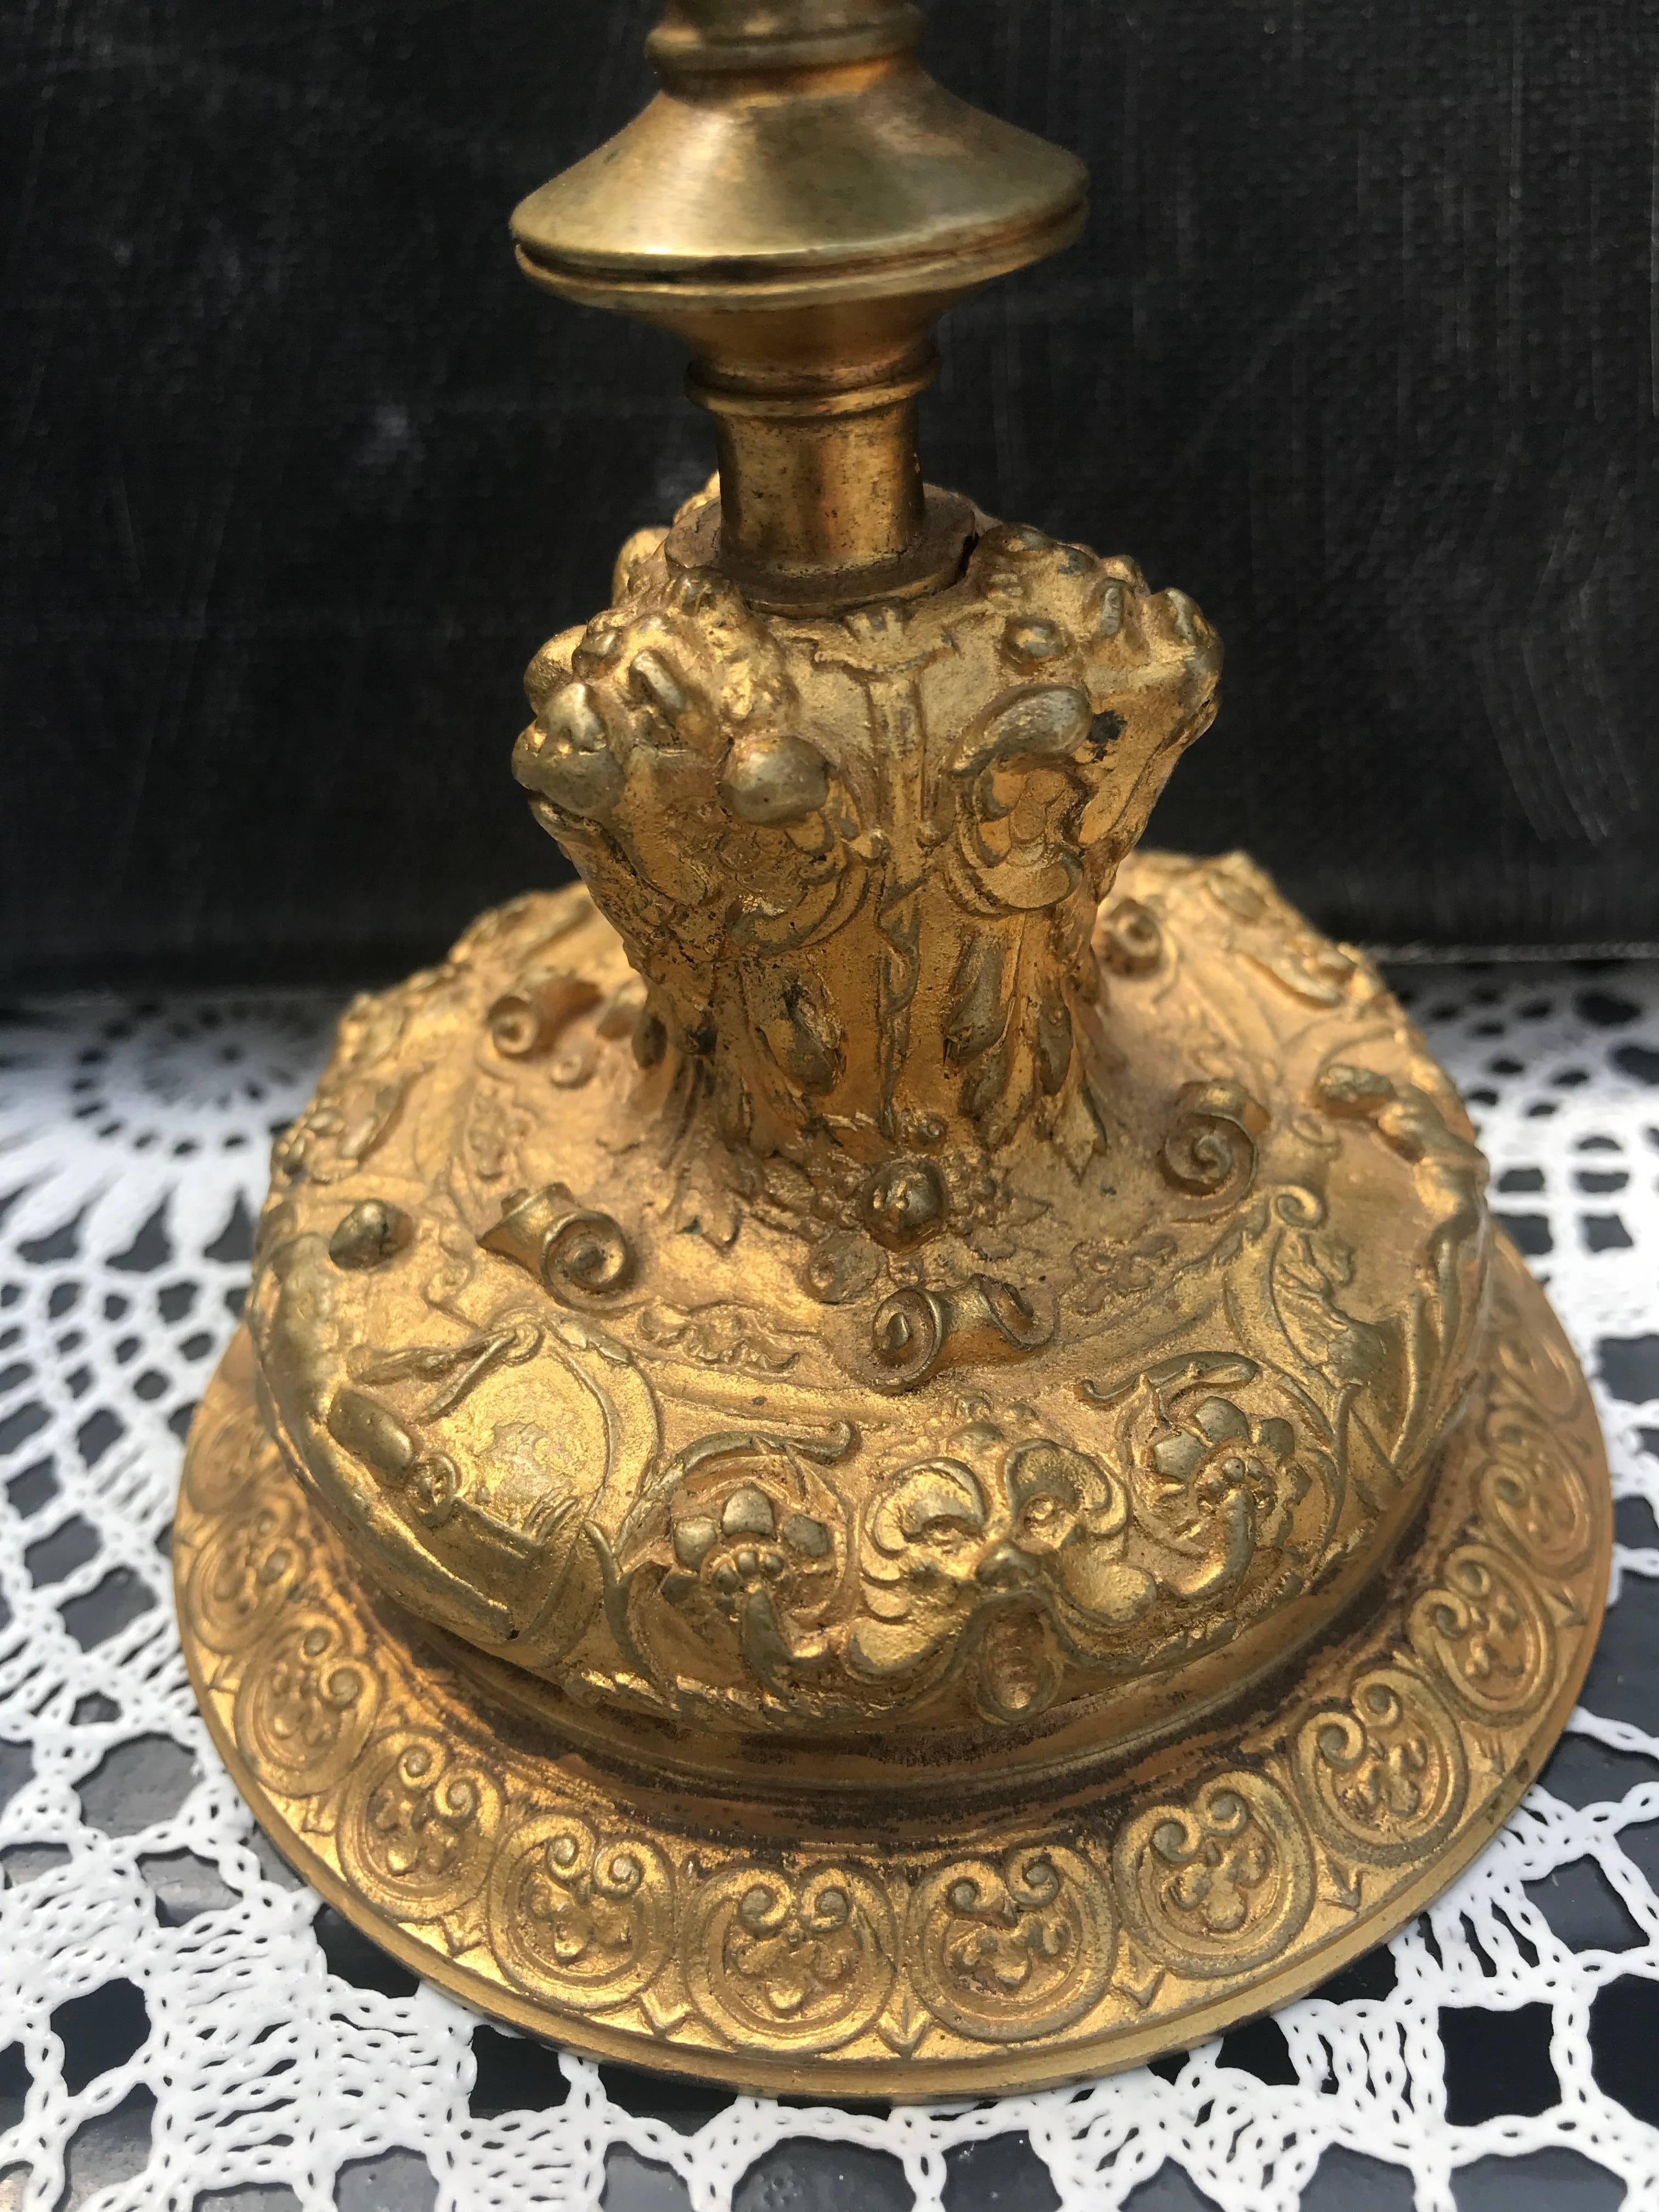 Praktische Größe und sehr dekorative Kerzenhalter aus Bronze. 

Wenn Sie auf der Suche nach einem seltenen Paar antiker, feiner Bronze-Kerzenhalter sind, dann könnte dieses attraktive und äußerst dekorative Paar schon bald Ihren Weg finden. Die